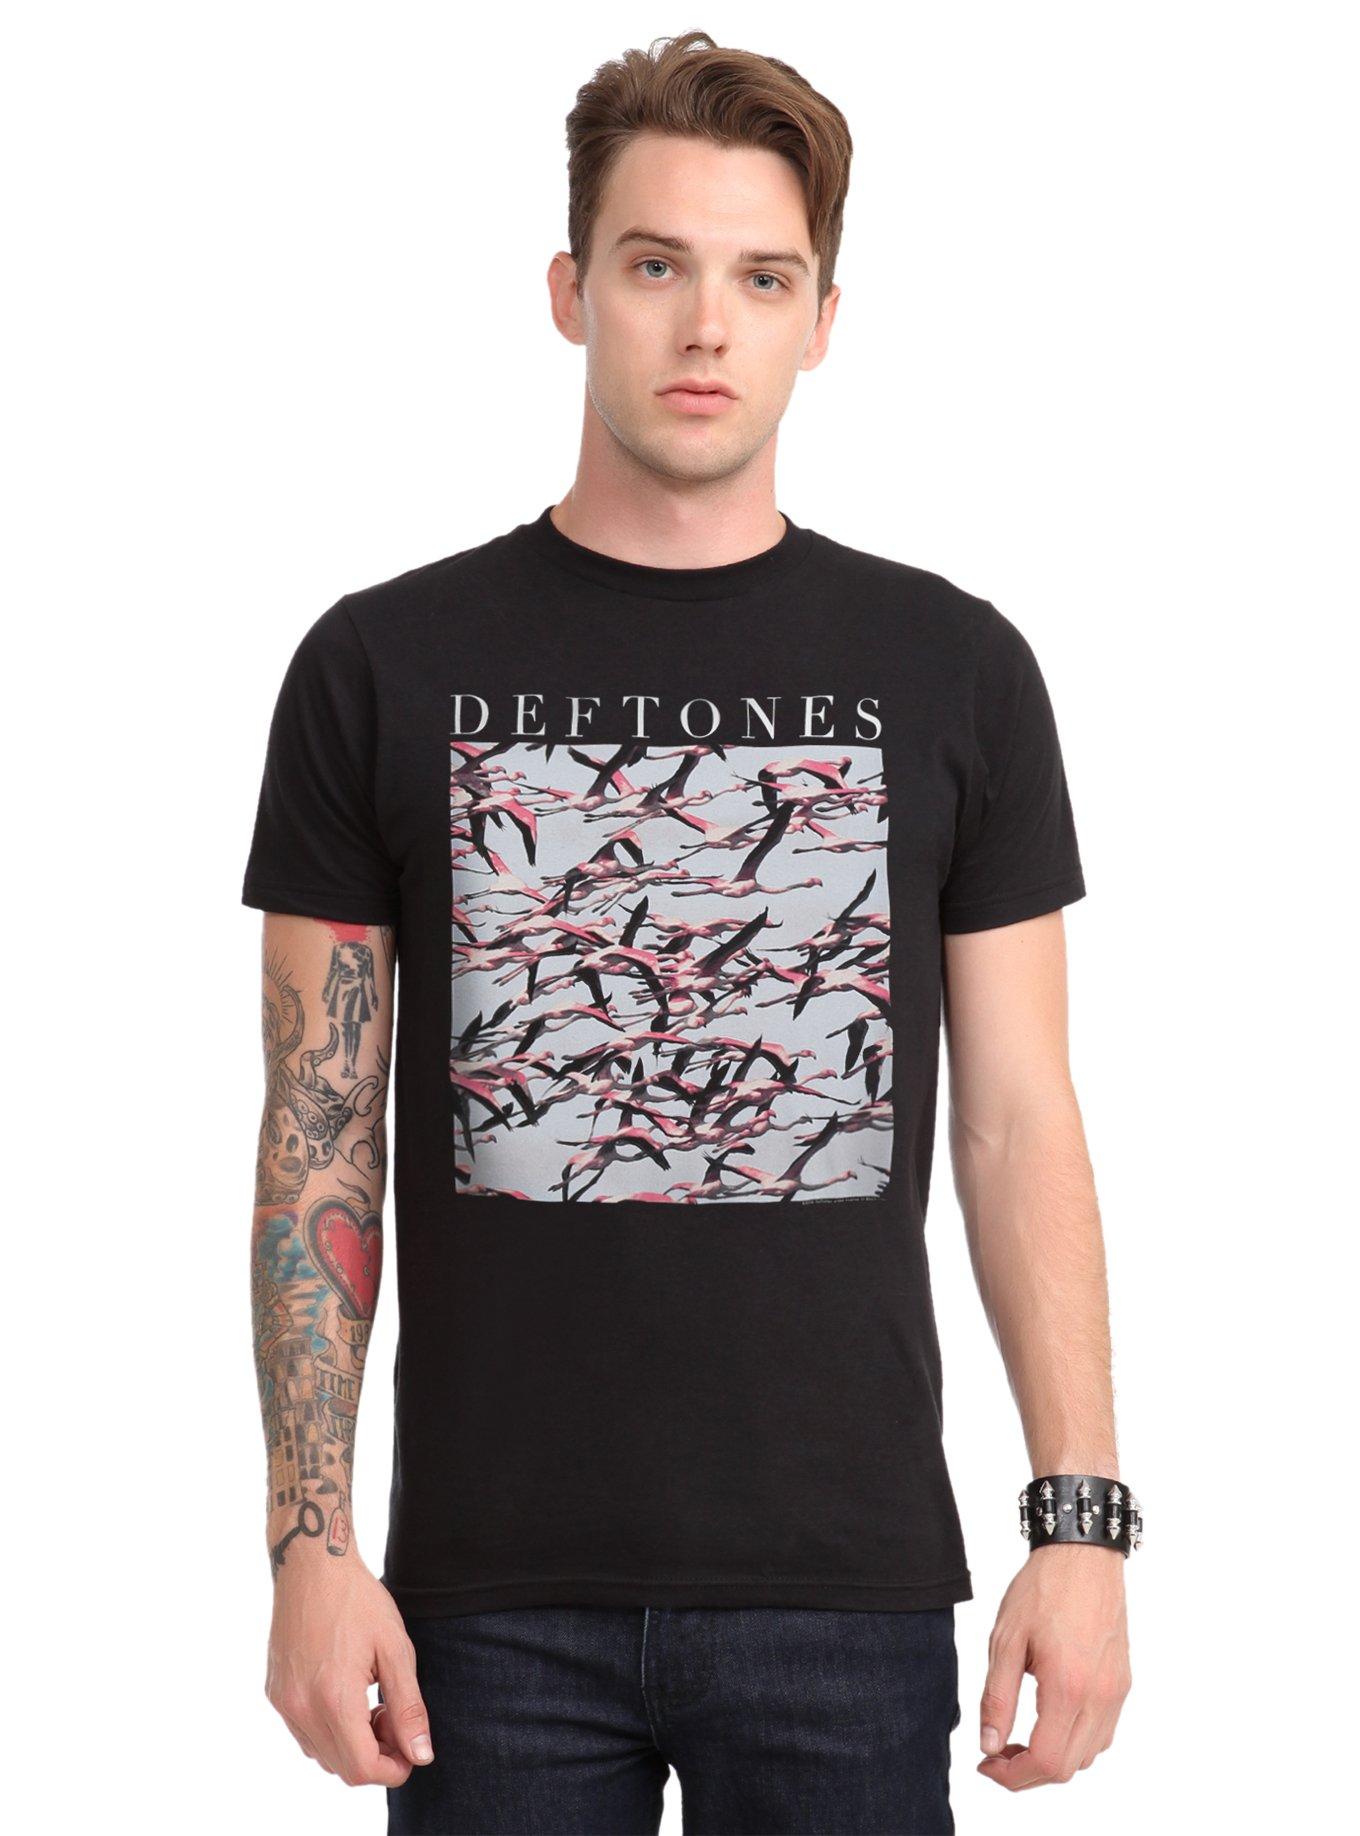 Deftones Gore T-Shirt, BLACK, hi-res